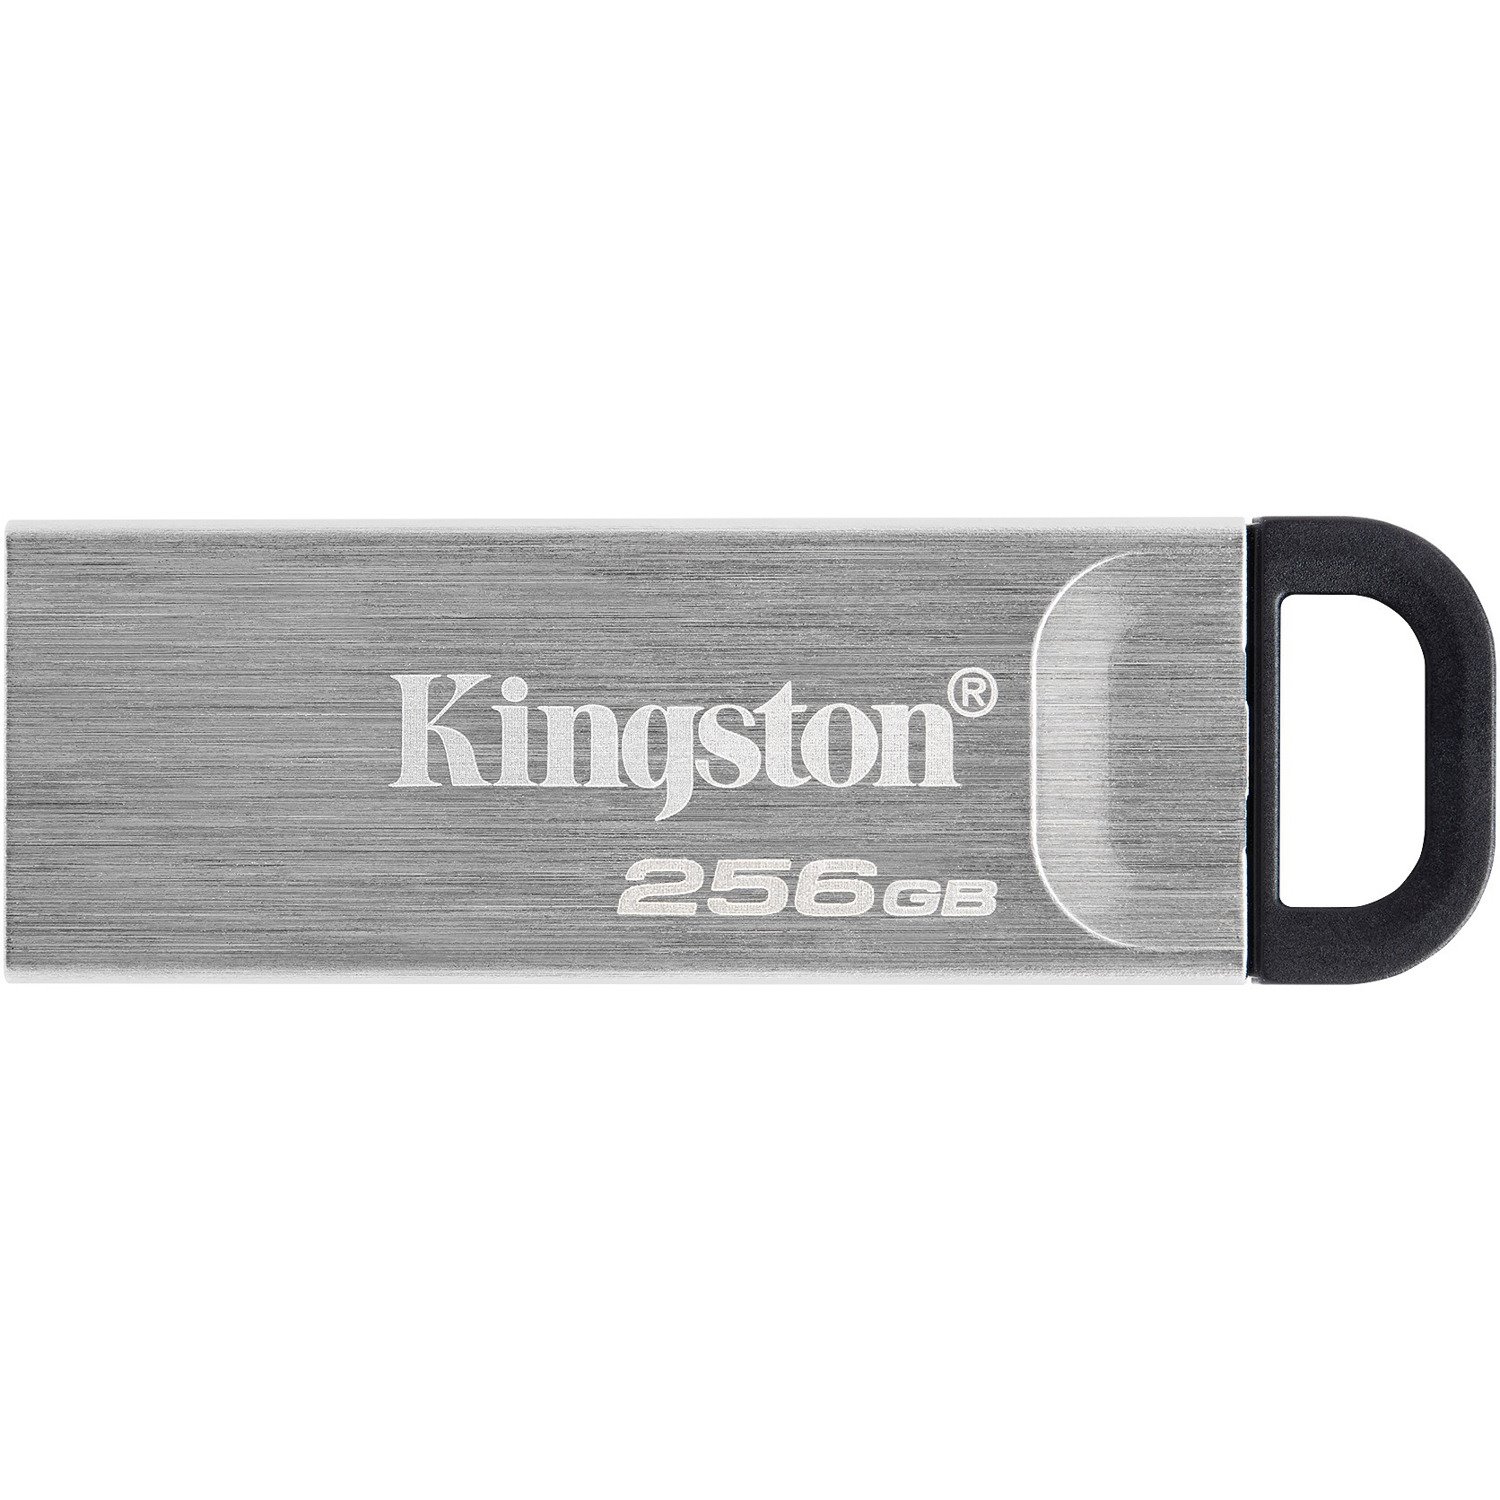 Kingston DataTraveler Kyson DTKN 256 GB USB 3.2 (Gen 1) Type A Flash Drive - Silver